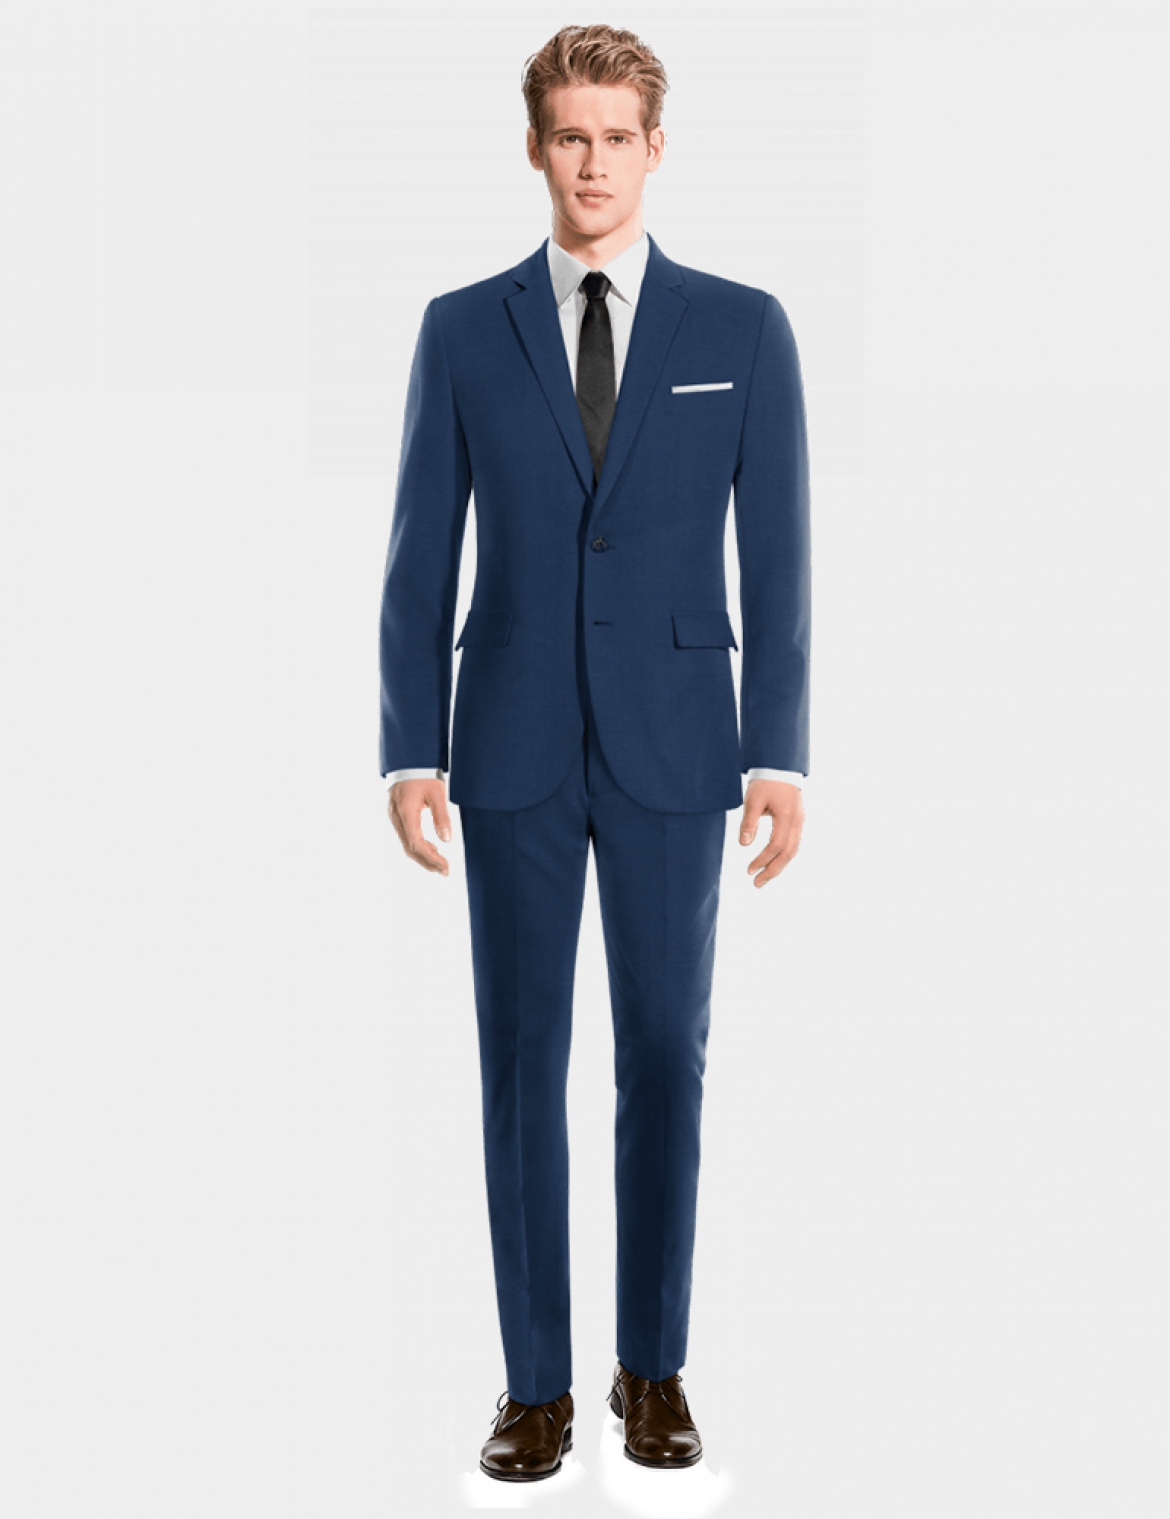 Custom suit - Blue Suit